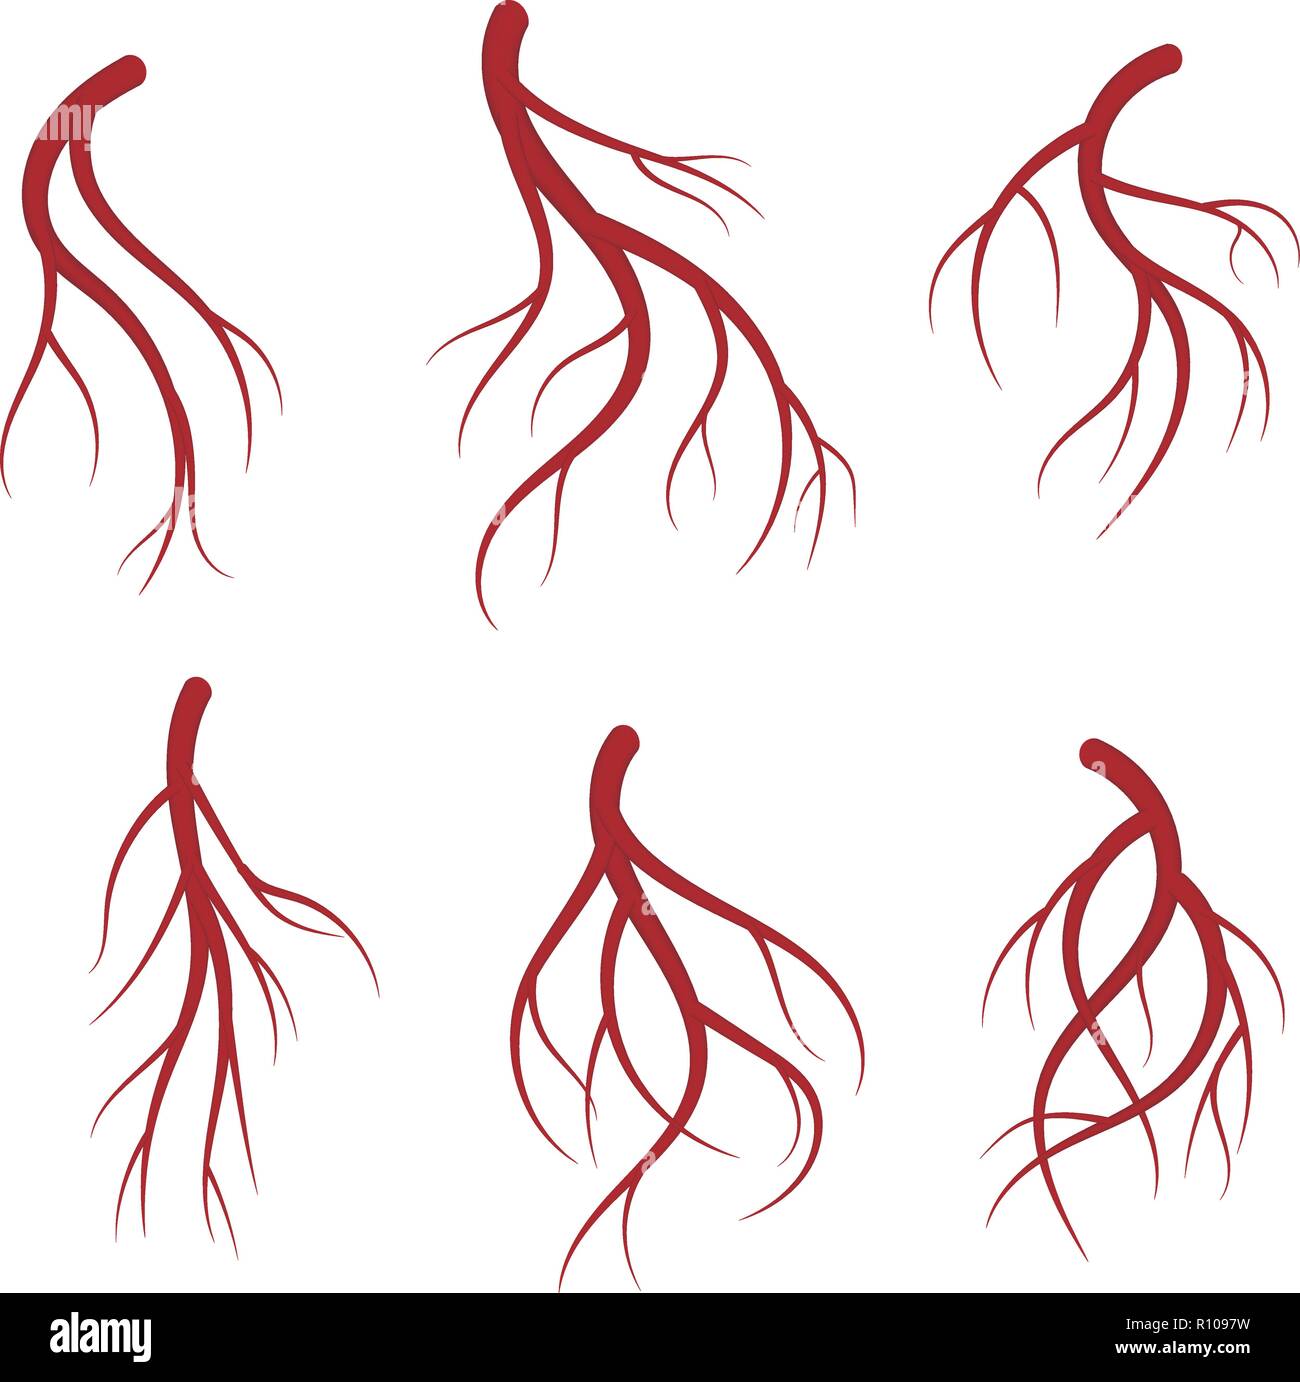 Les veines, vaisseaux sanguins rouges ensemble. Vector illustration médicale réaliste isolé sur fond blanc Illustration de Vecteur